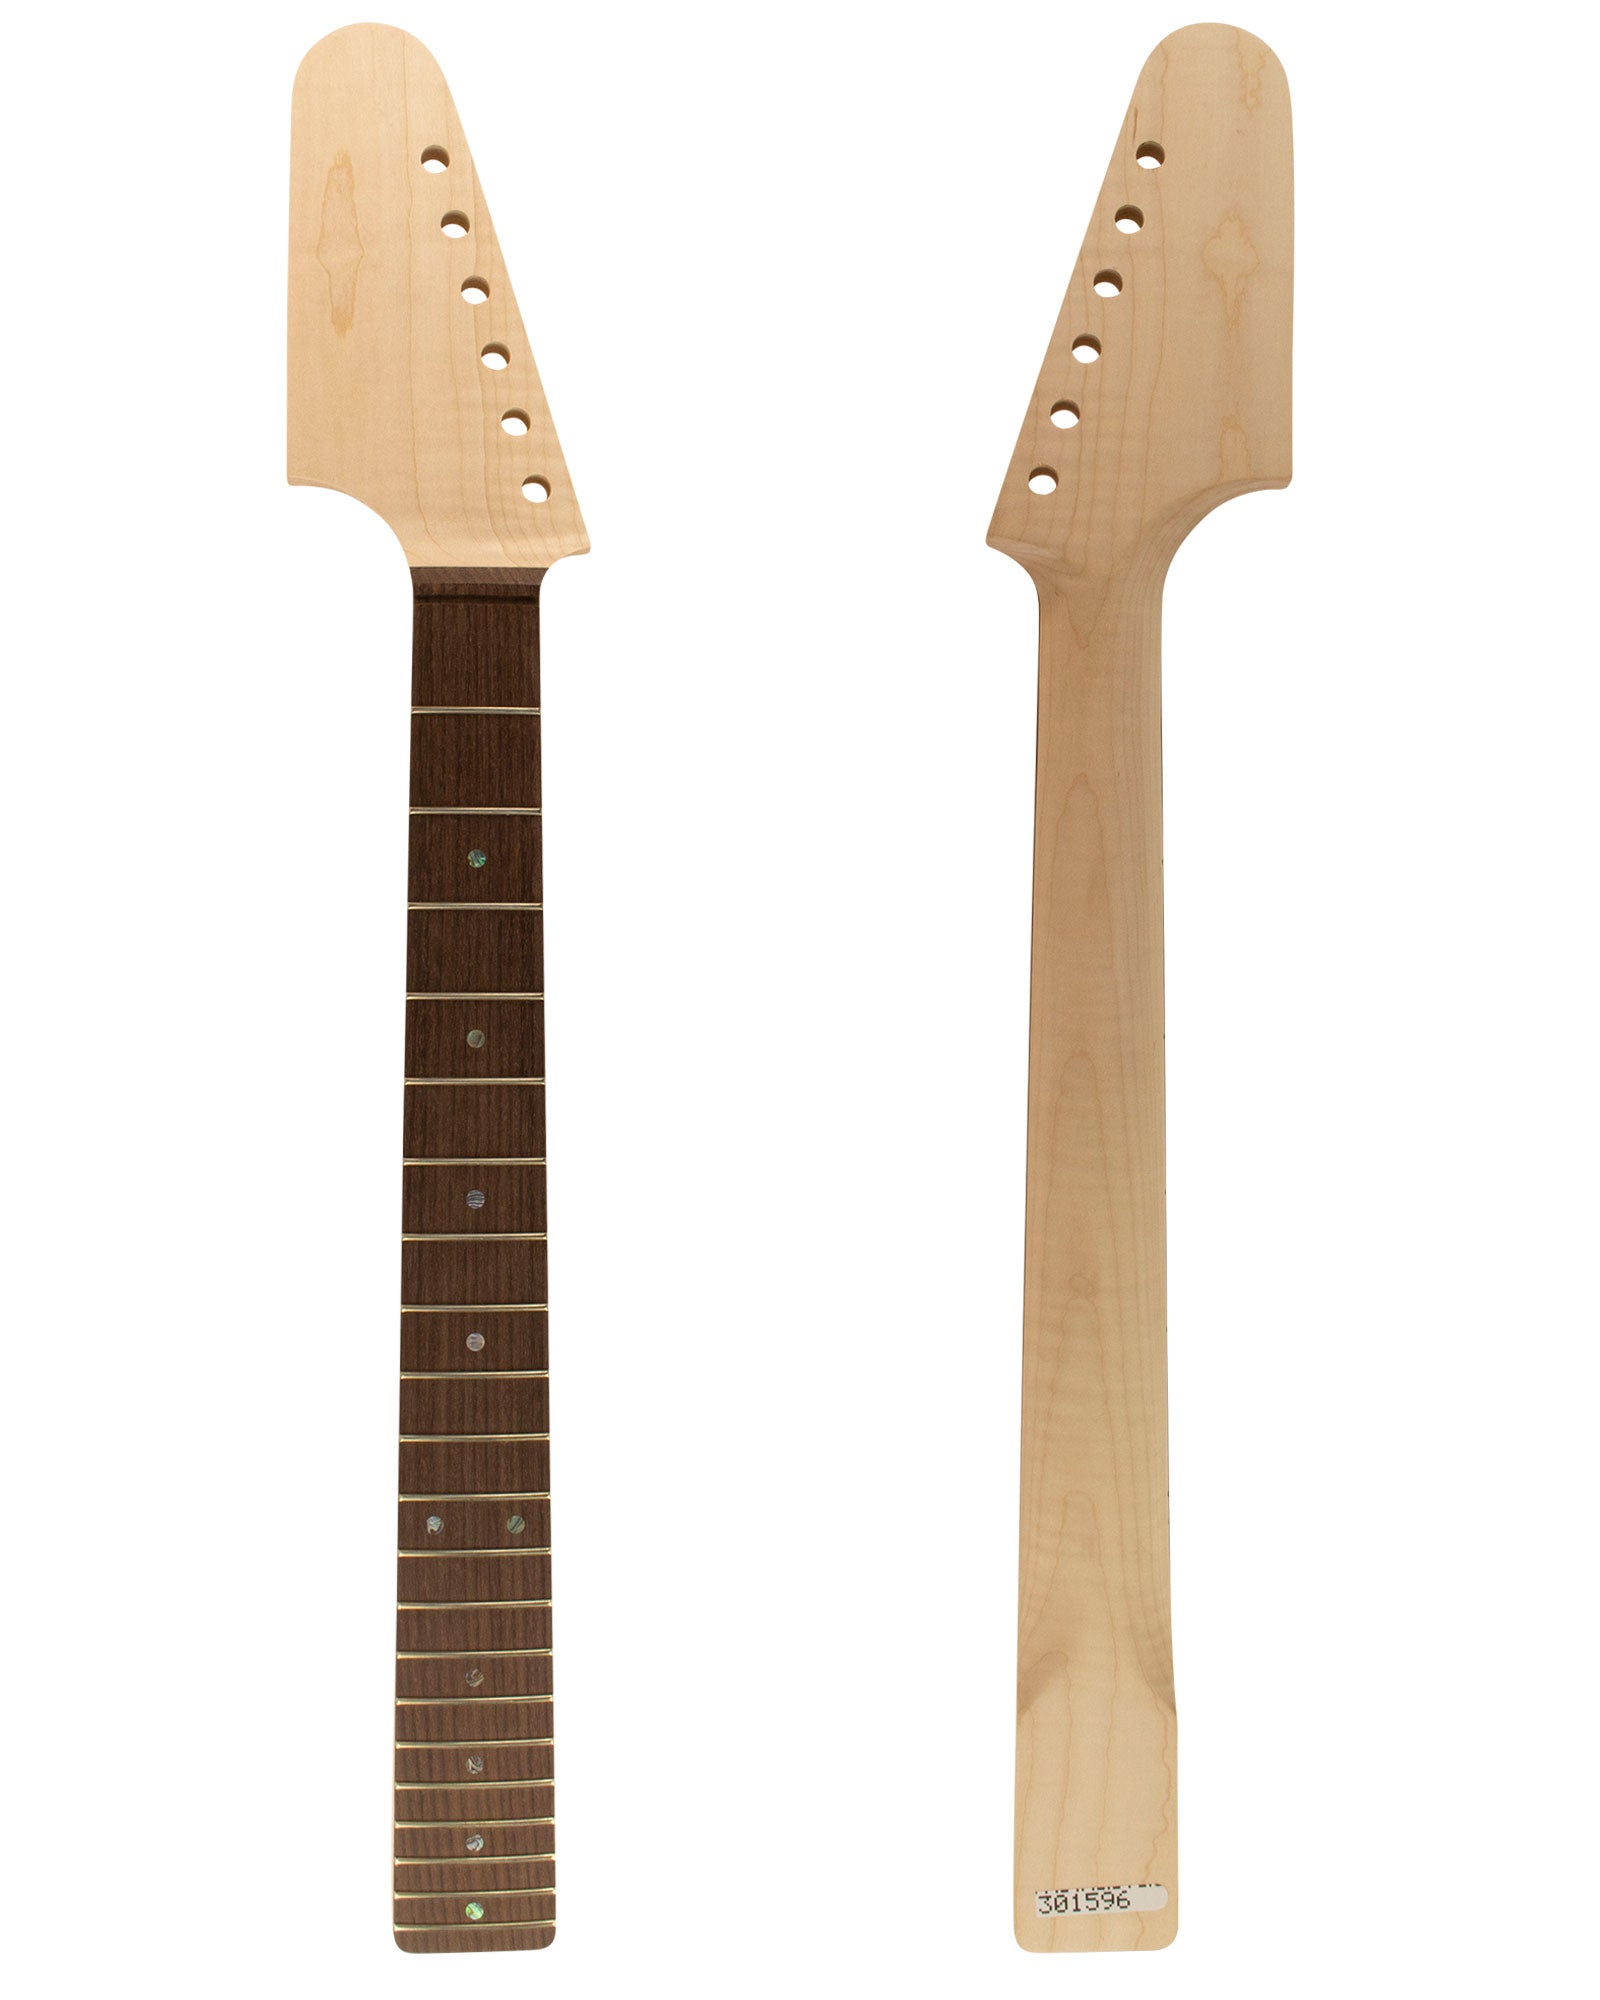 TC Guitar Neck 301596-Guitar Neck - In Stock-Guitarbuild